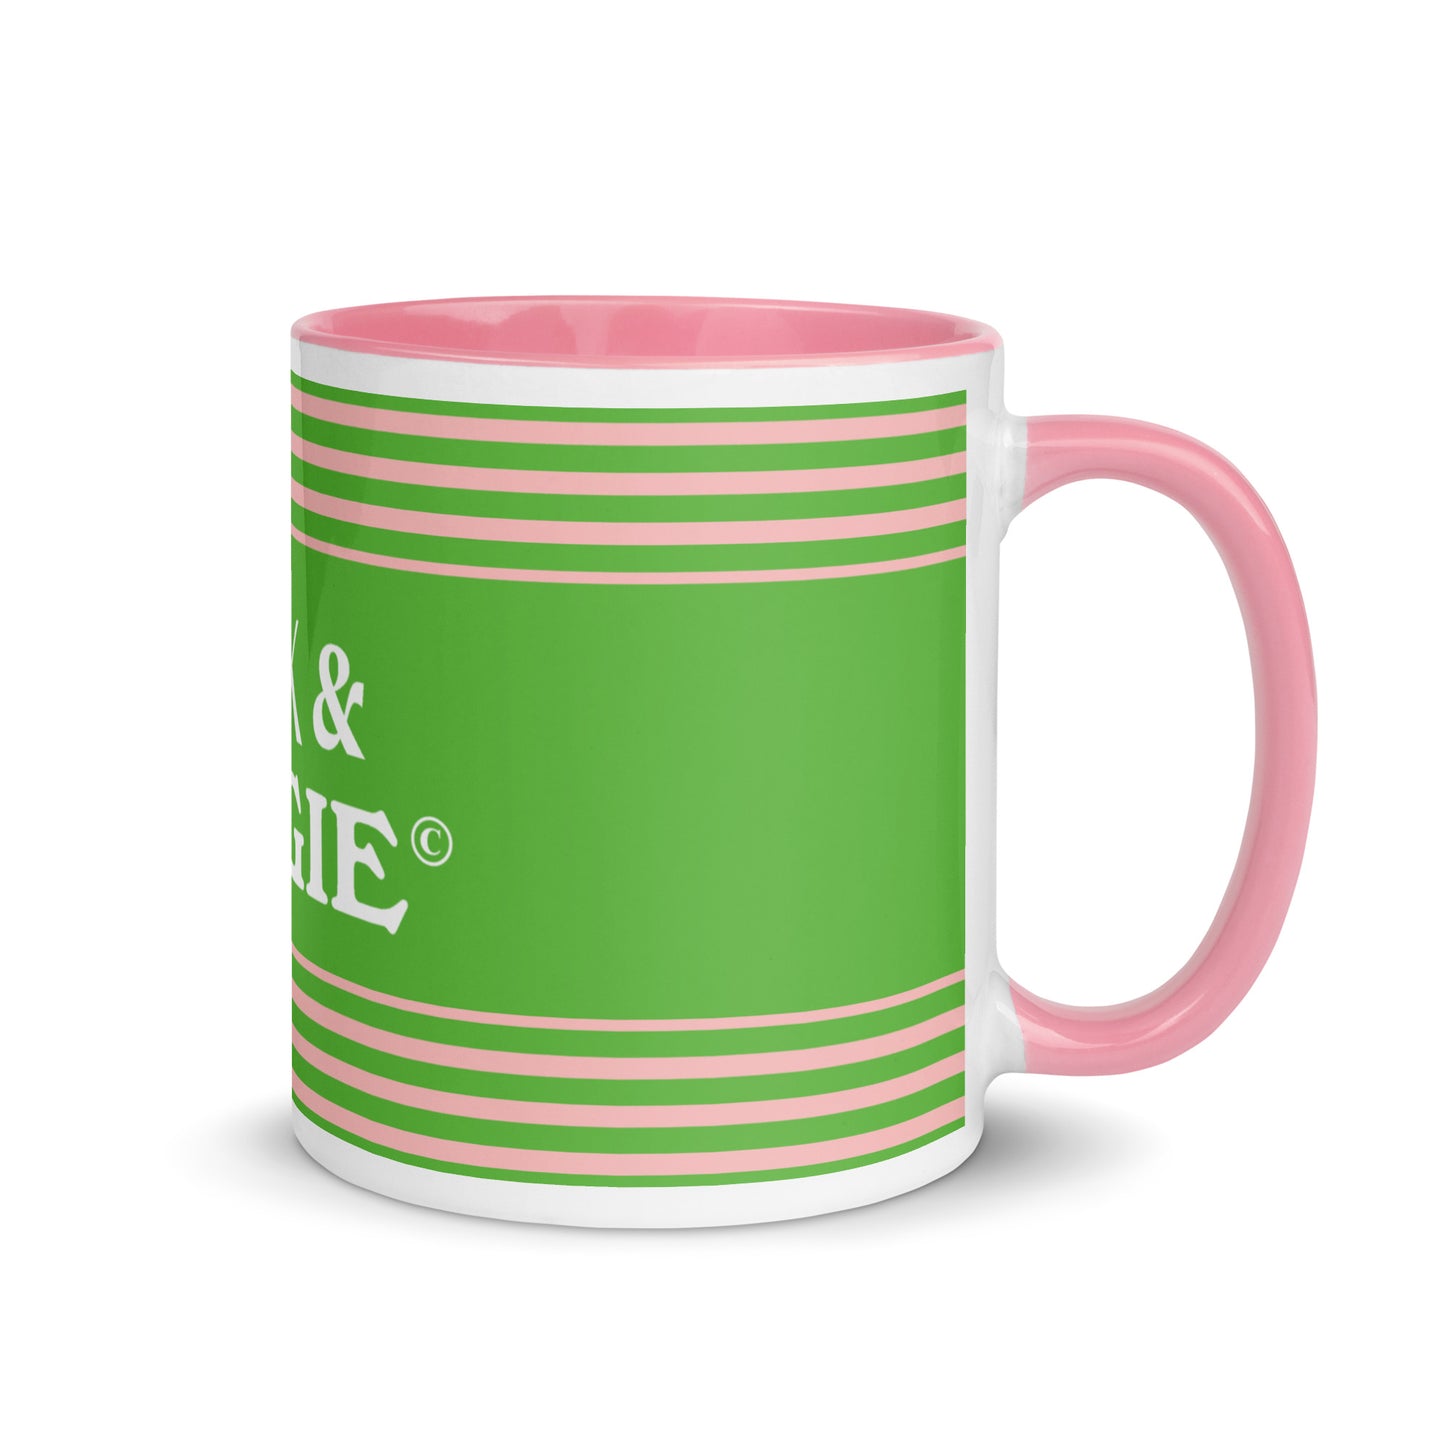 Black & Bougie Pink/Green Mug